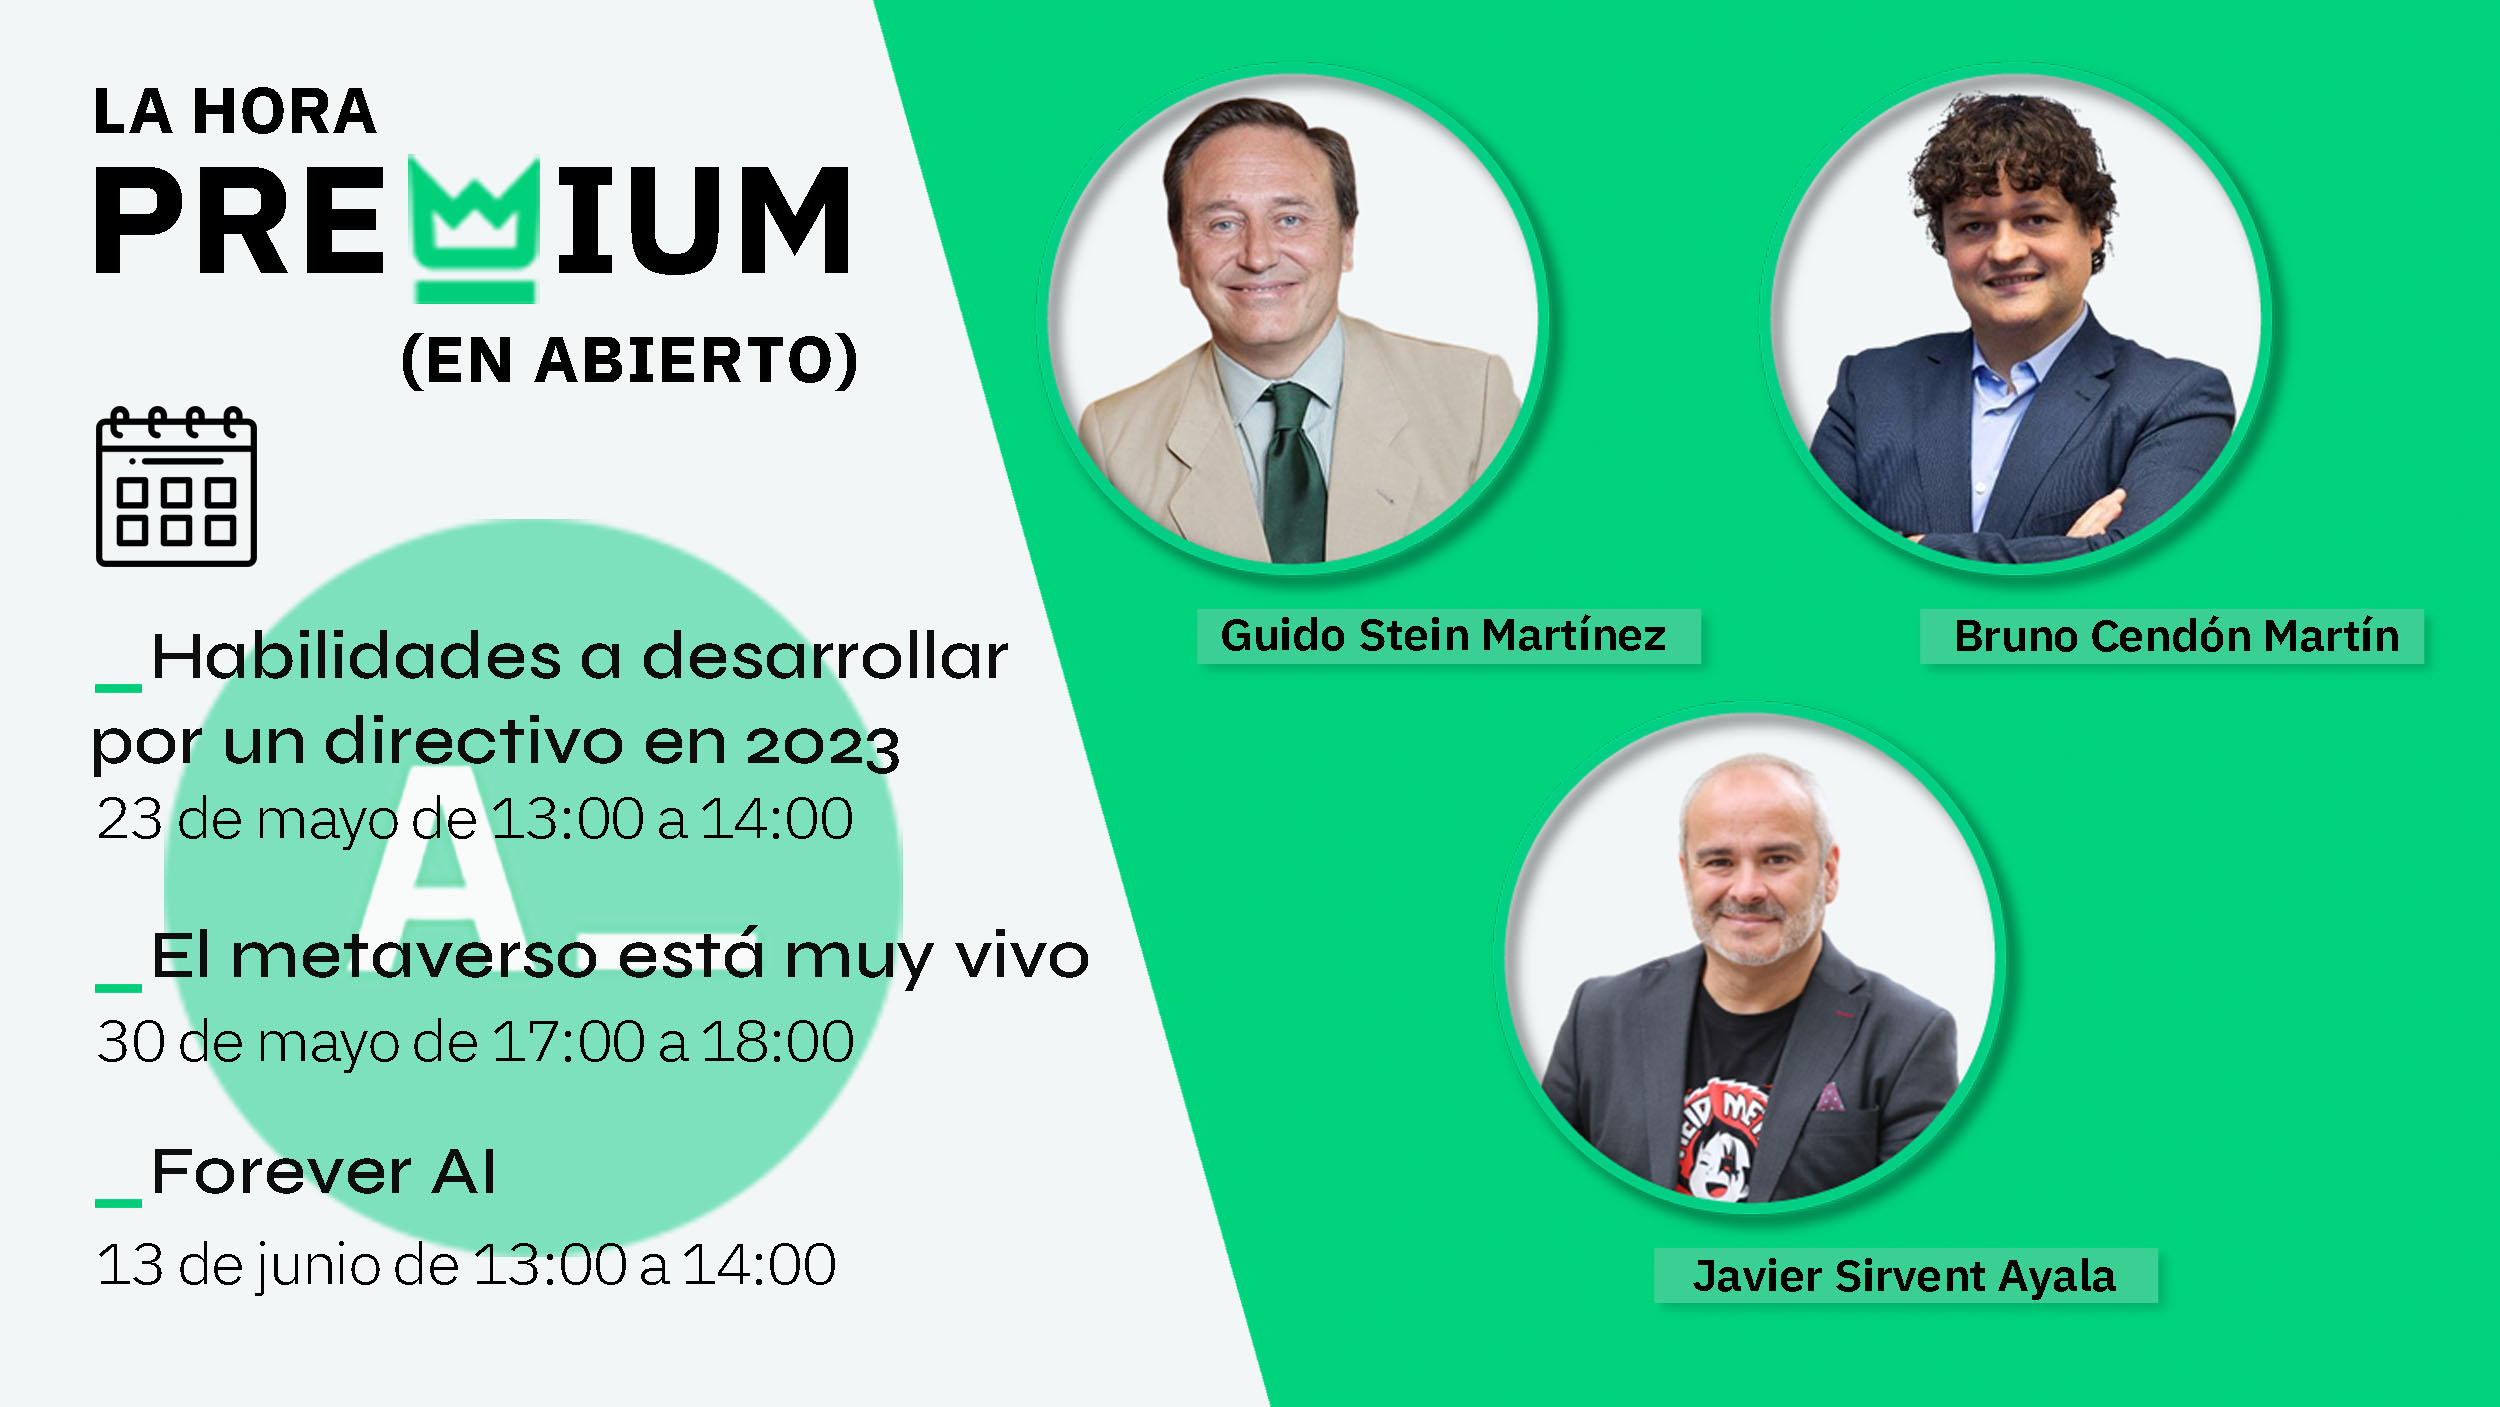 Guido Stein, Bruno Cendón y Javier Sirvent, protagonistas de las próximas sesiones en abierto de la Hora Premium